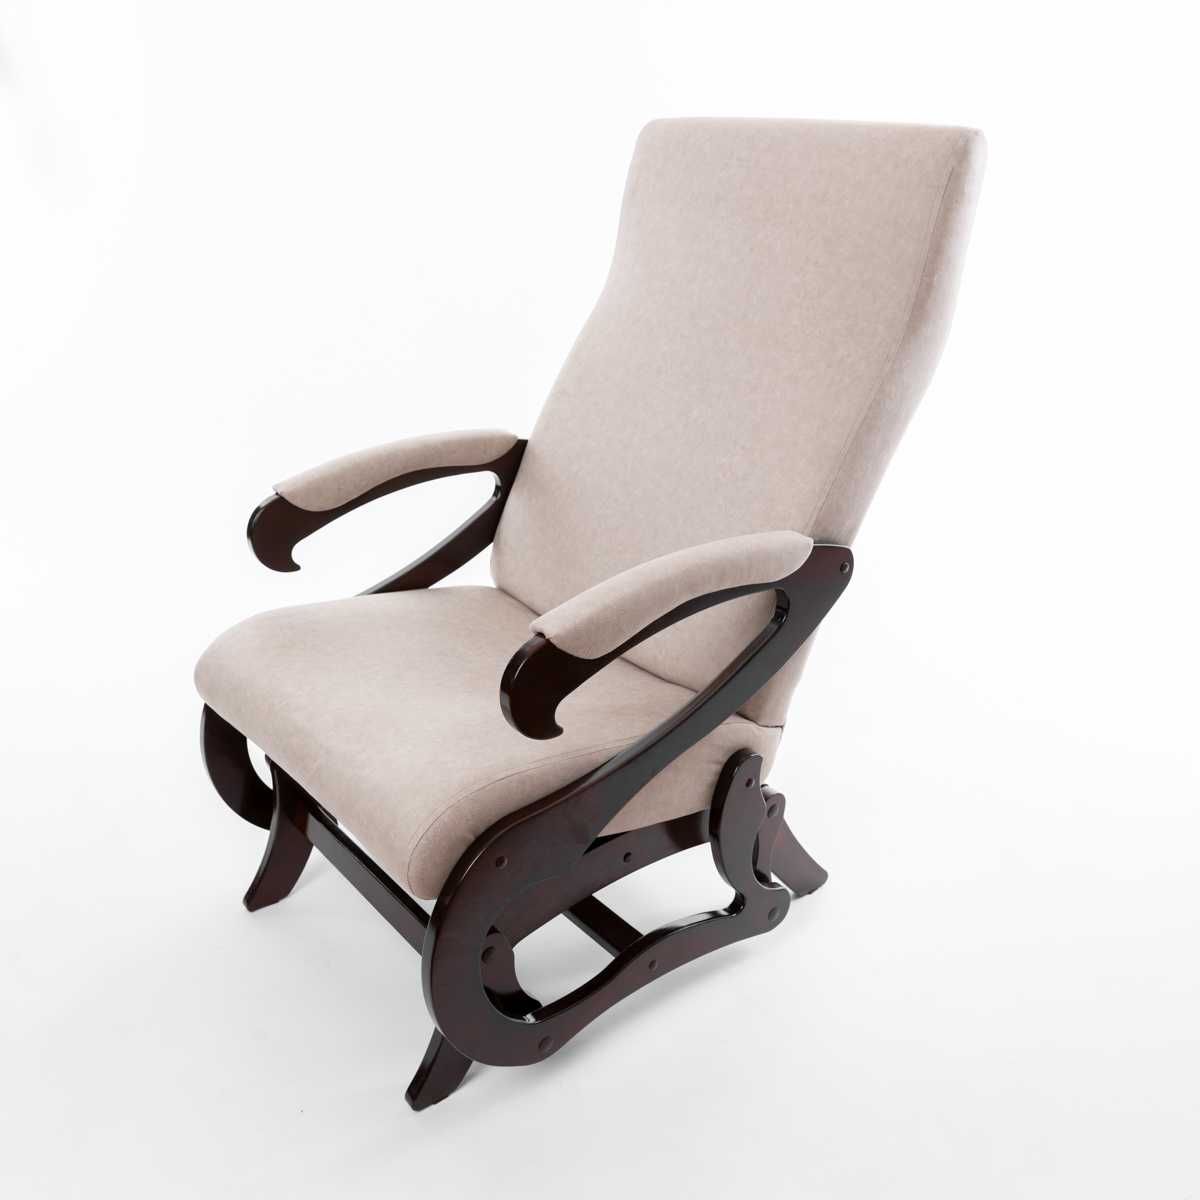 Делаем кресло-качалку своими руками: модели из дерева и пластика. как сделать своими руками деревянное маятниковое кресло материалы и инструменты